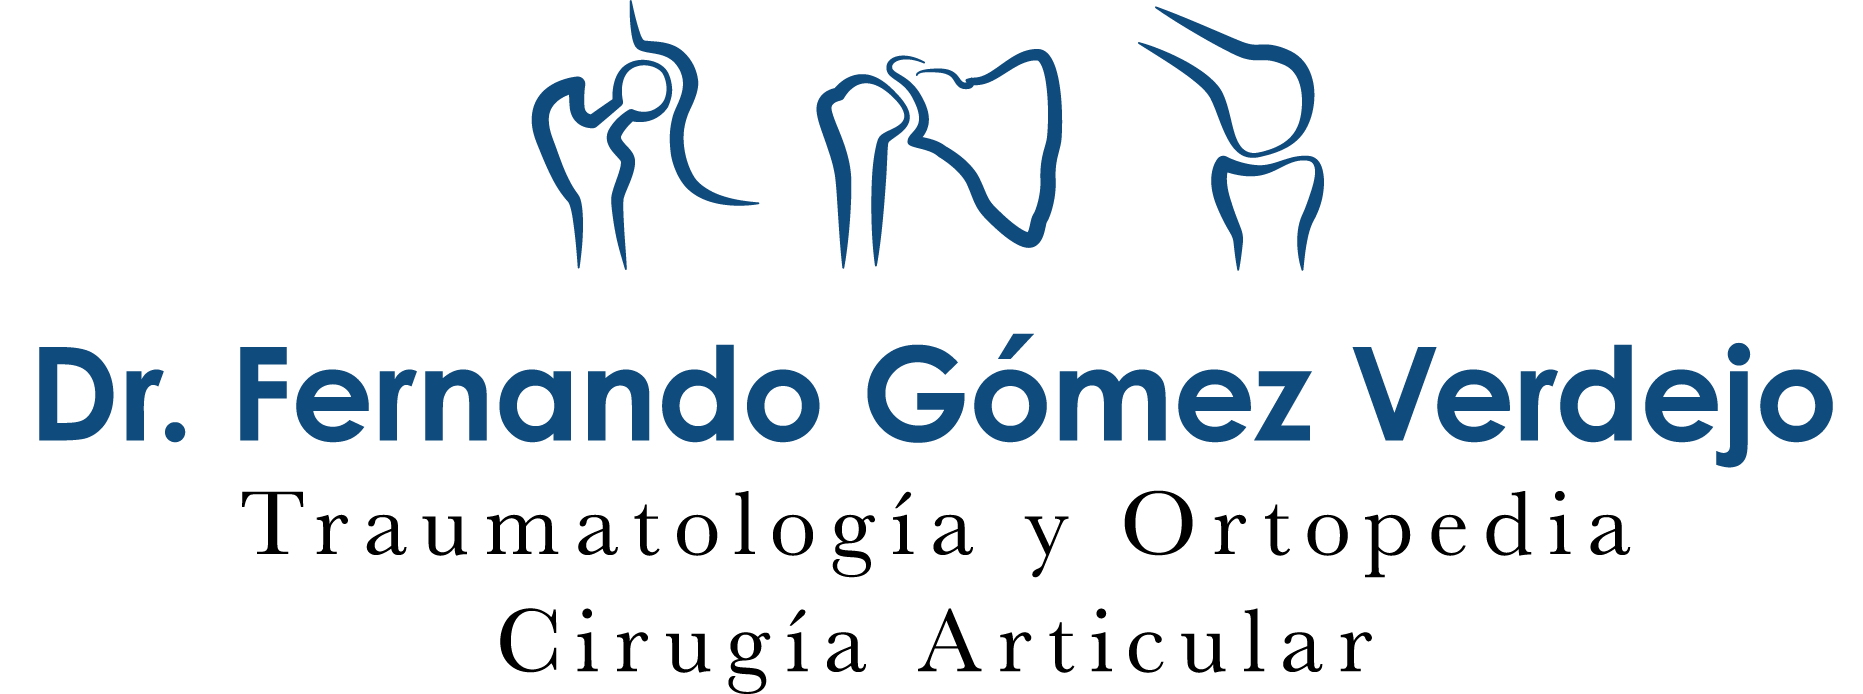 Ortopedista y Traumatólogo en CDMX - Dr. Fernando Gómez